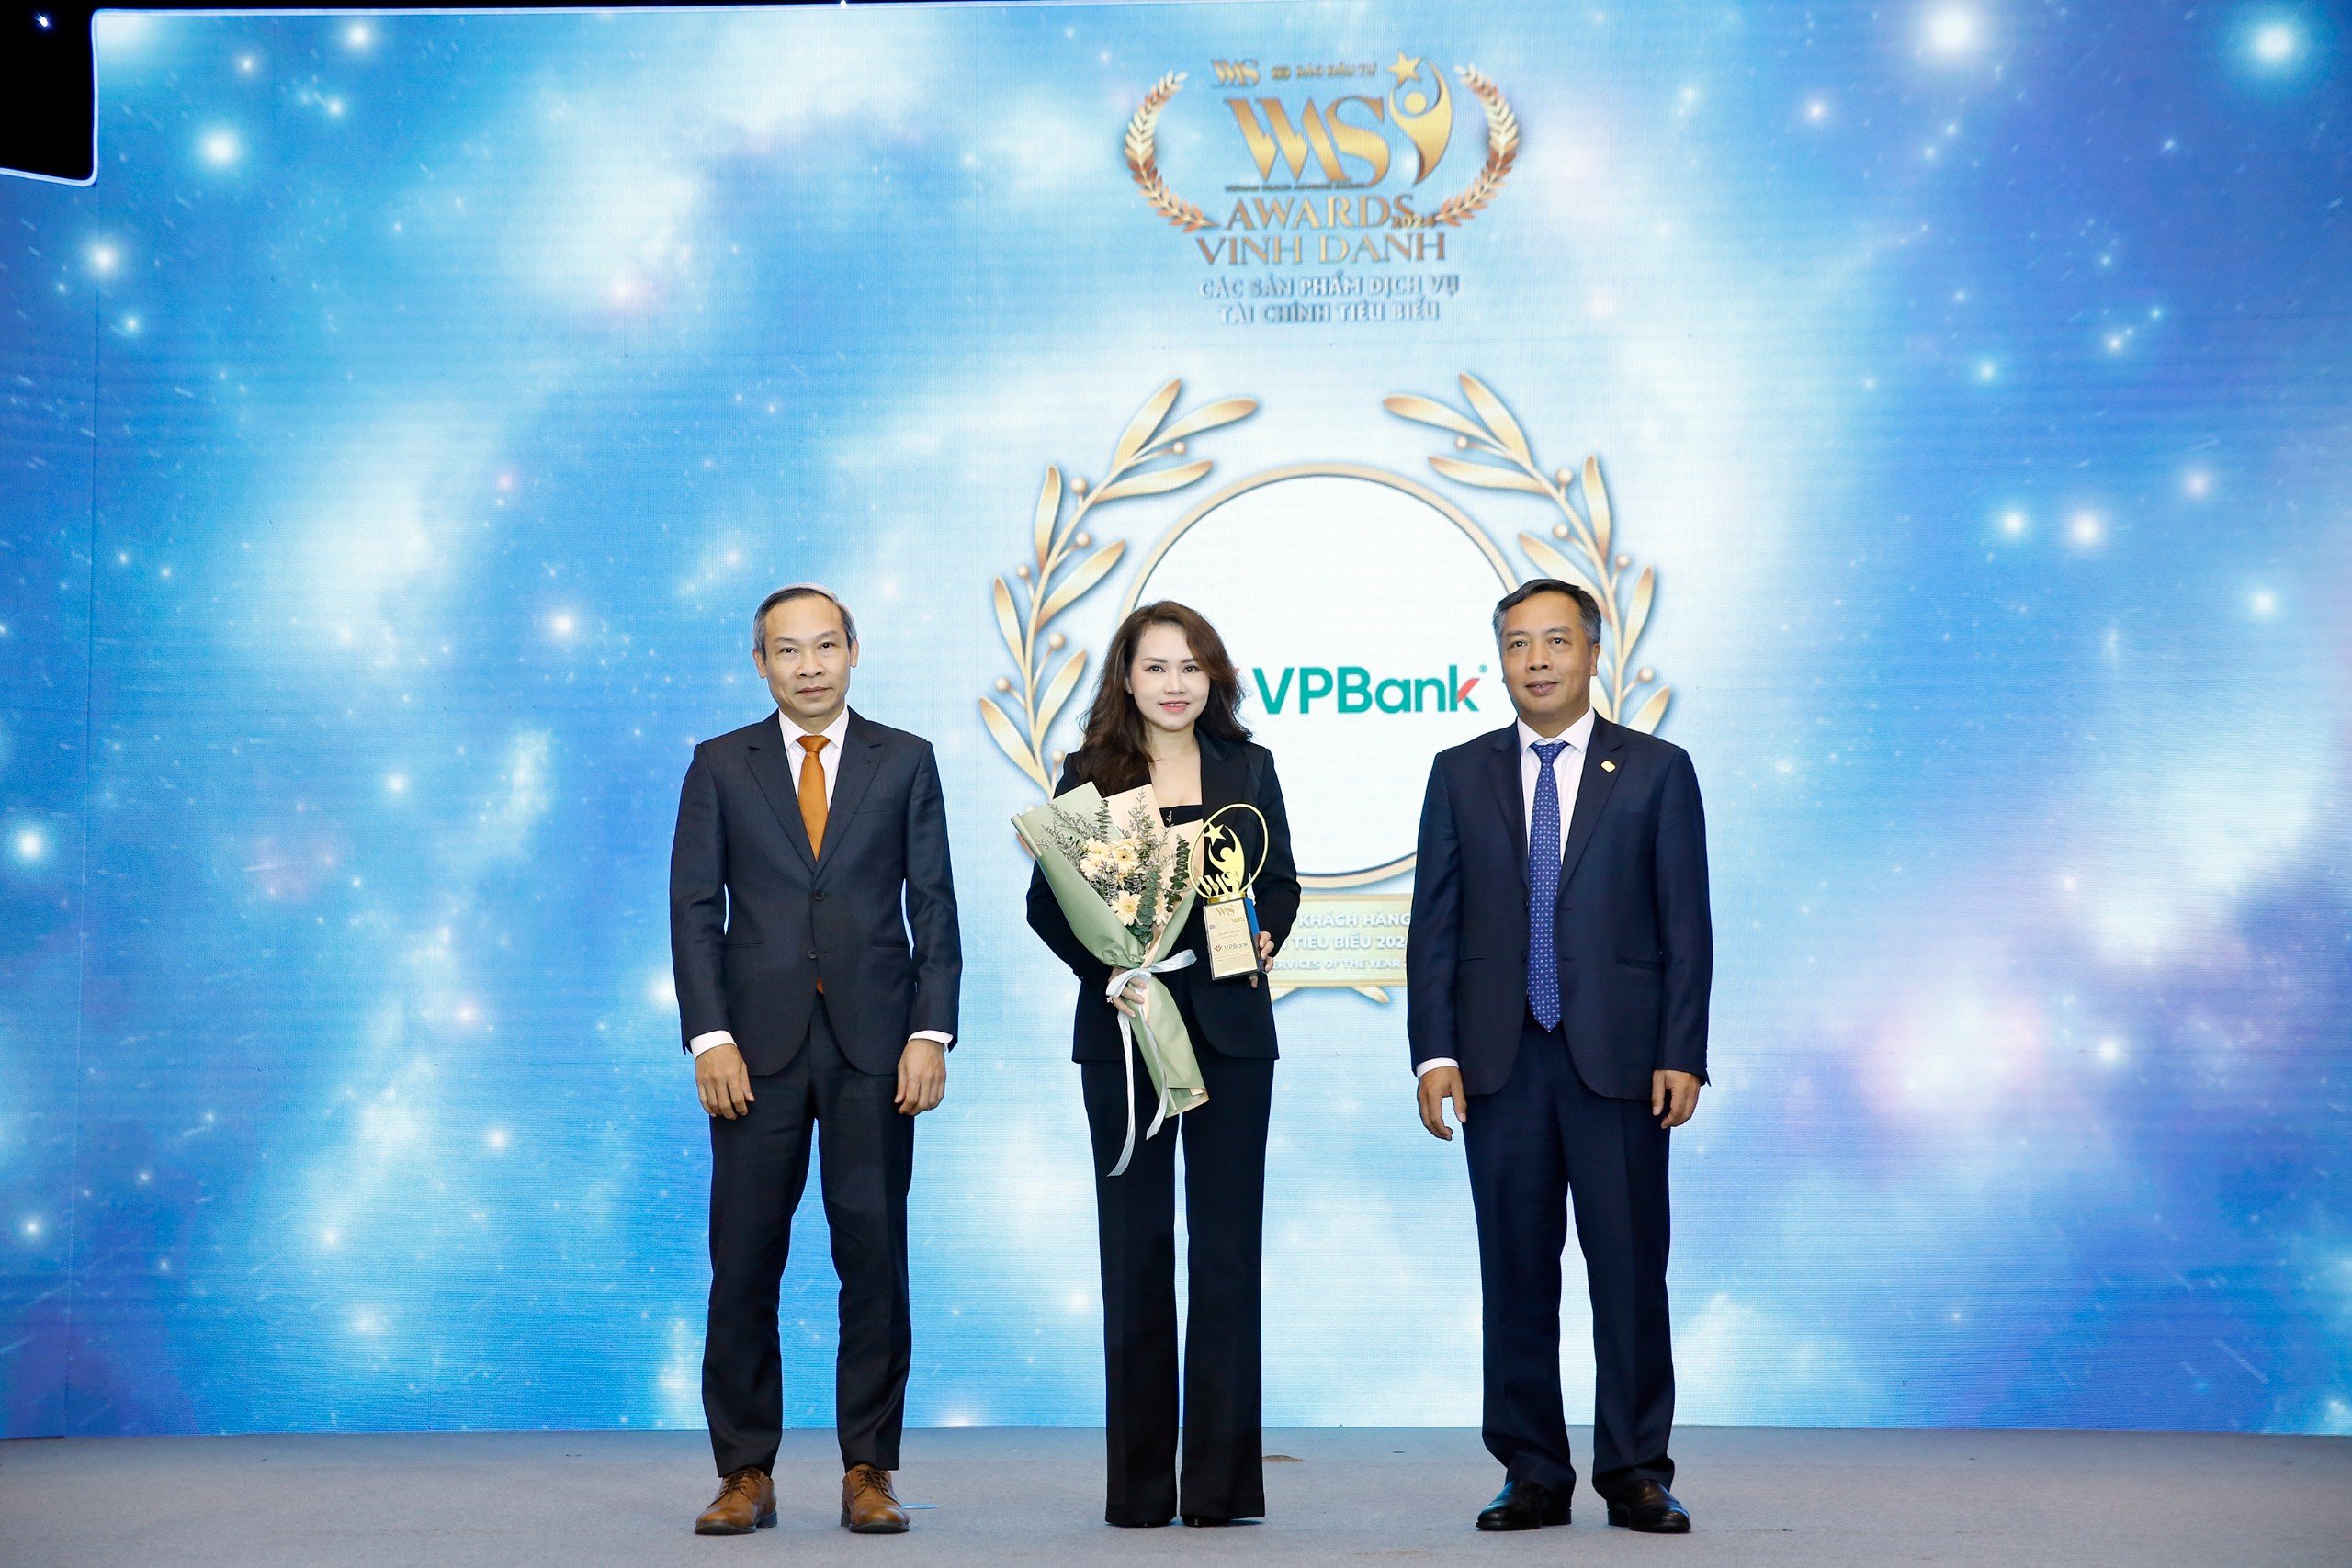 “Dịch vụ khách hàng ưu tiên” của VPBank được vinh danh tại Diễn đàn Cấp cao Cố vấn tài chính Việt Nam 2024